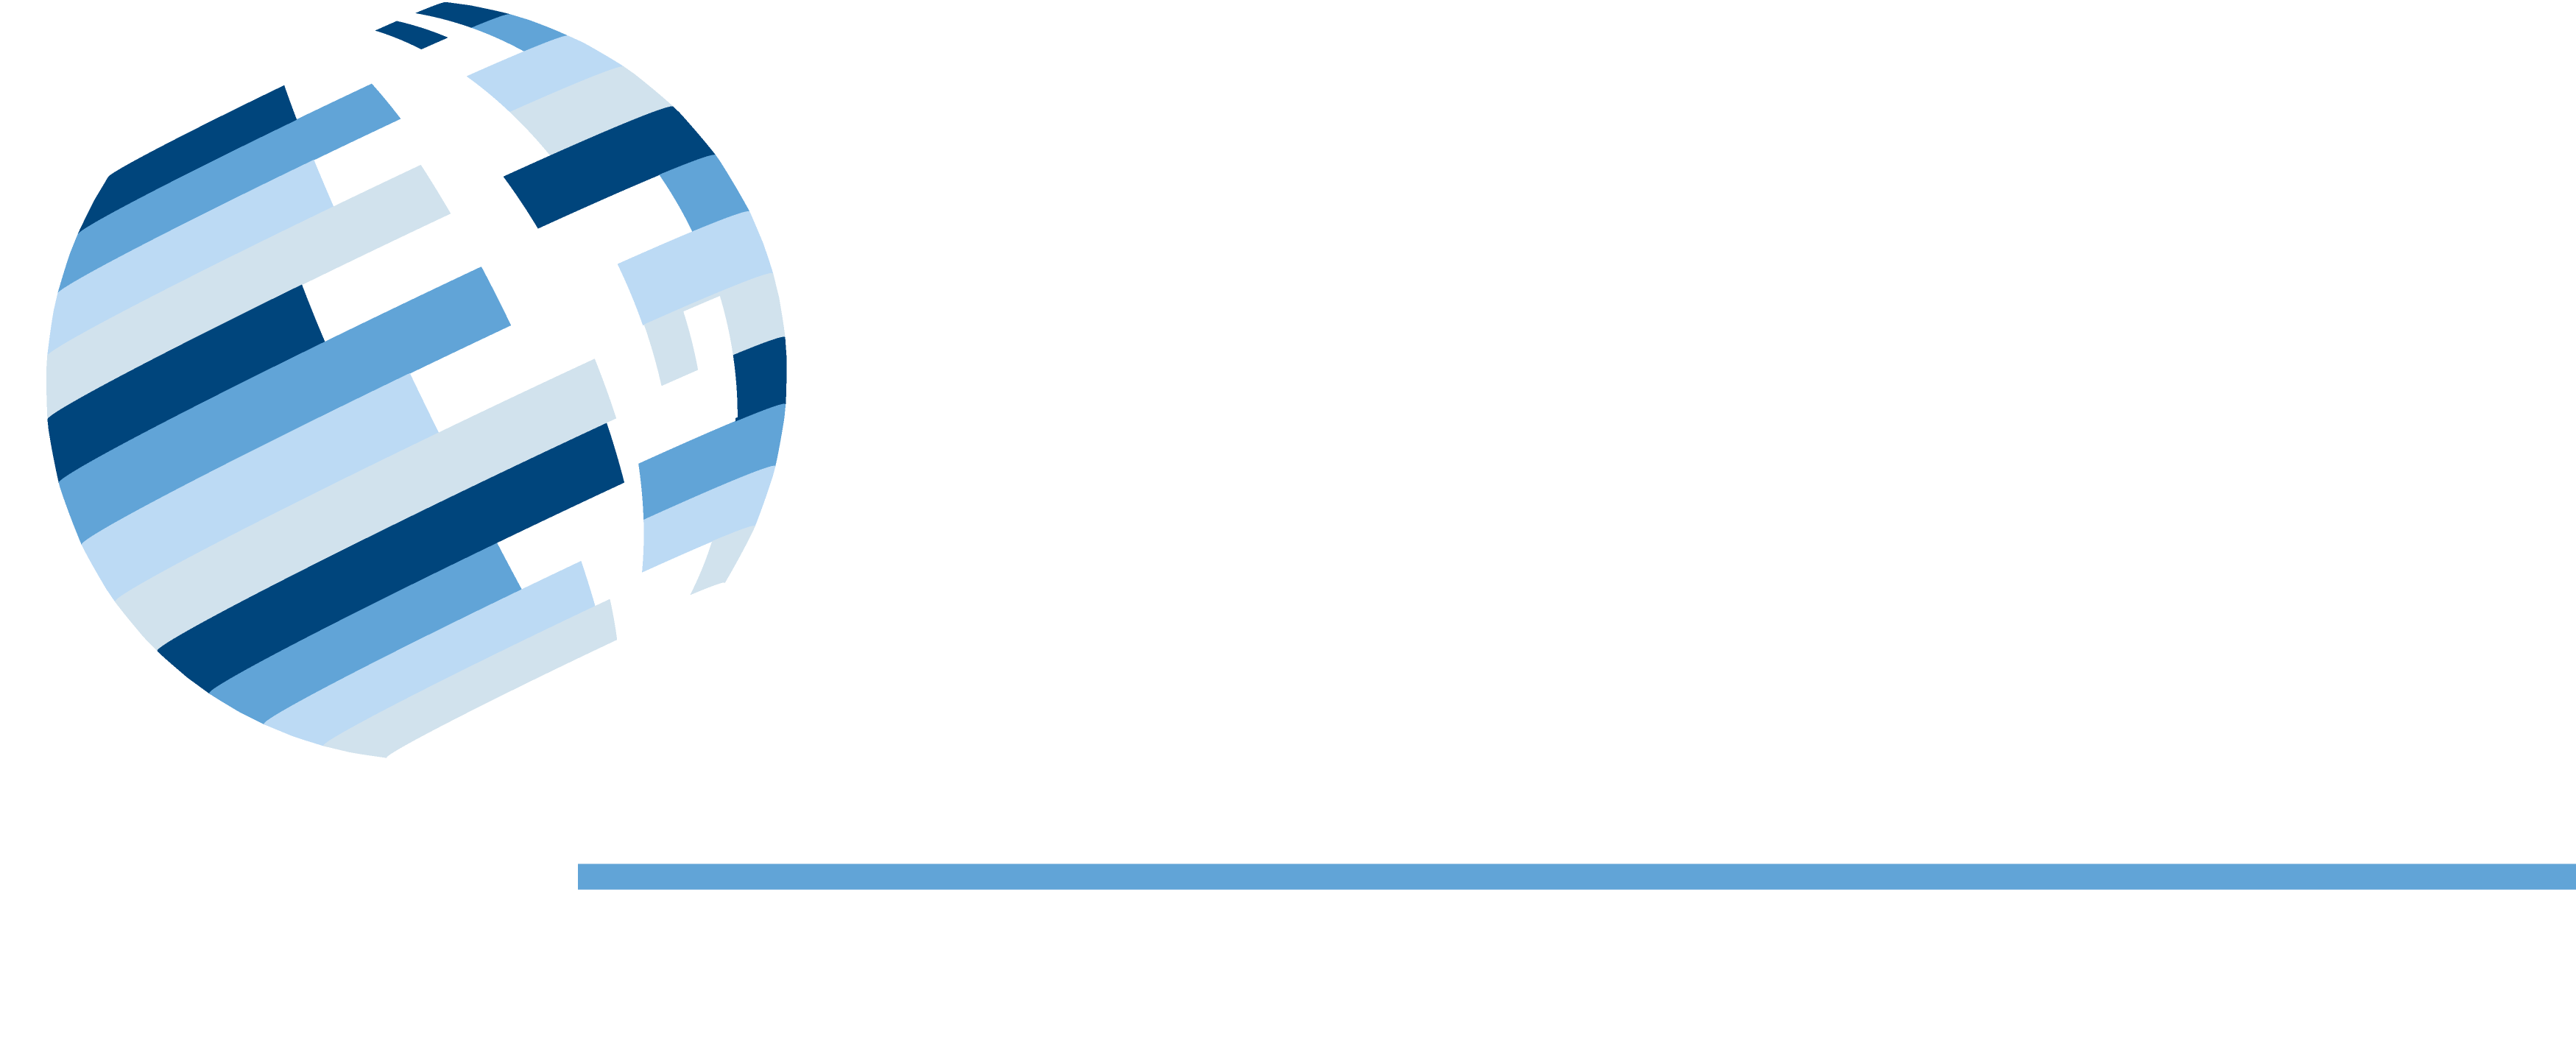 PGG Contadores